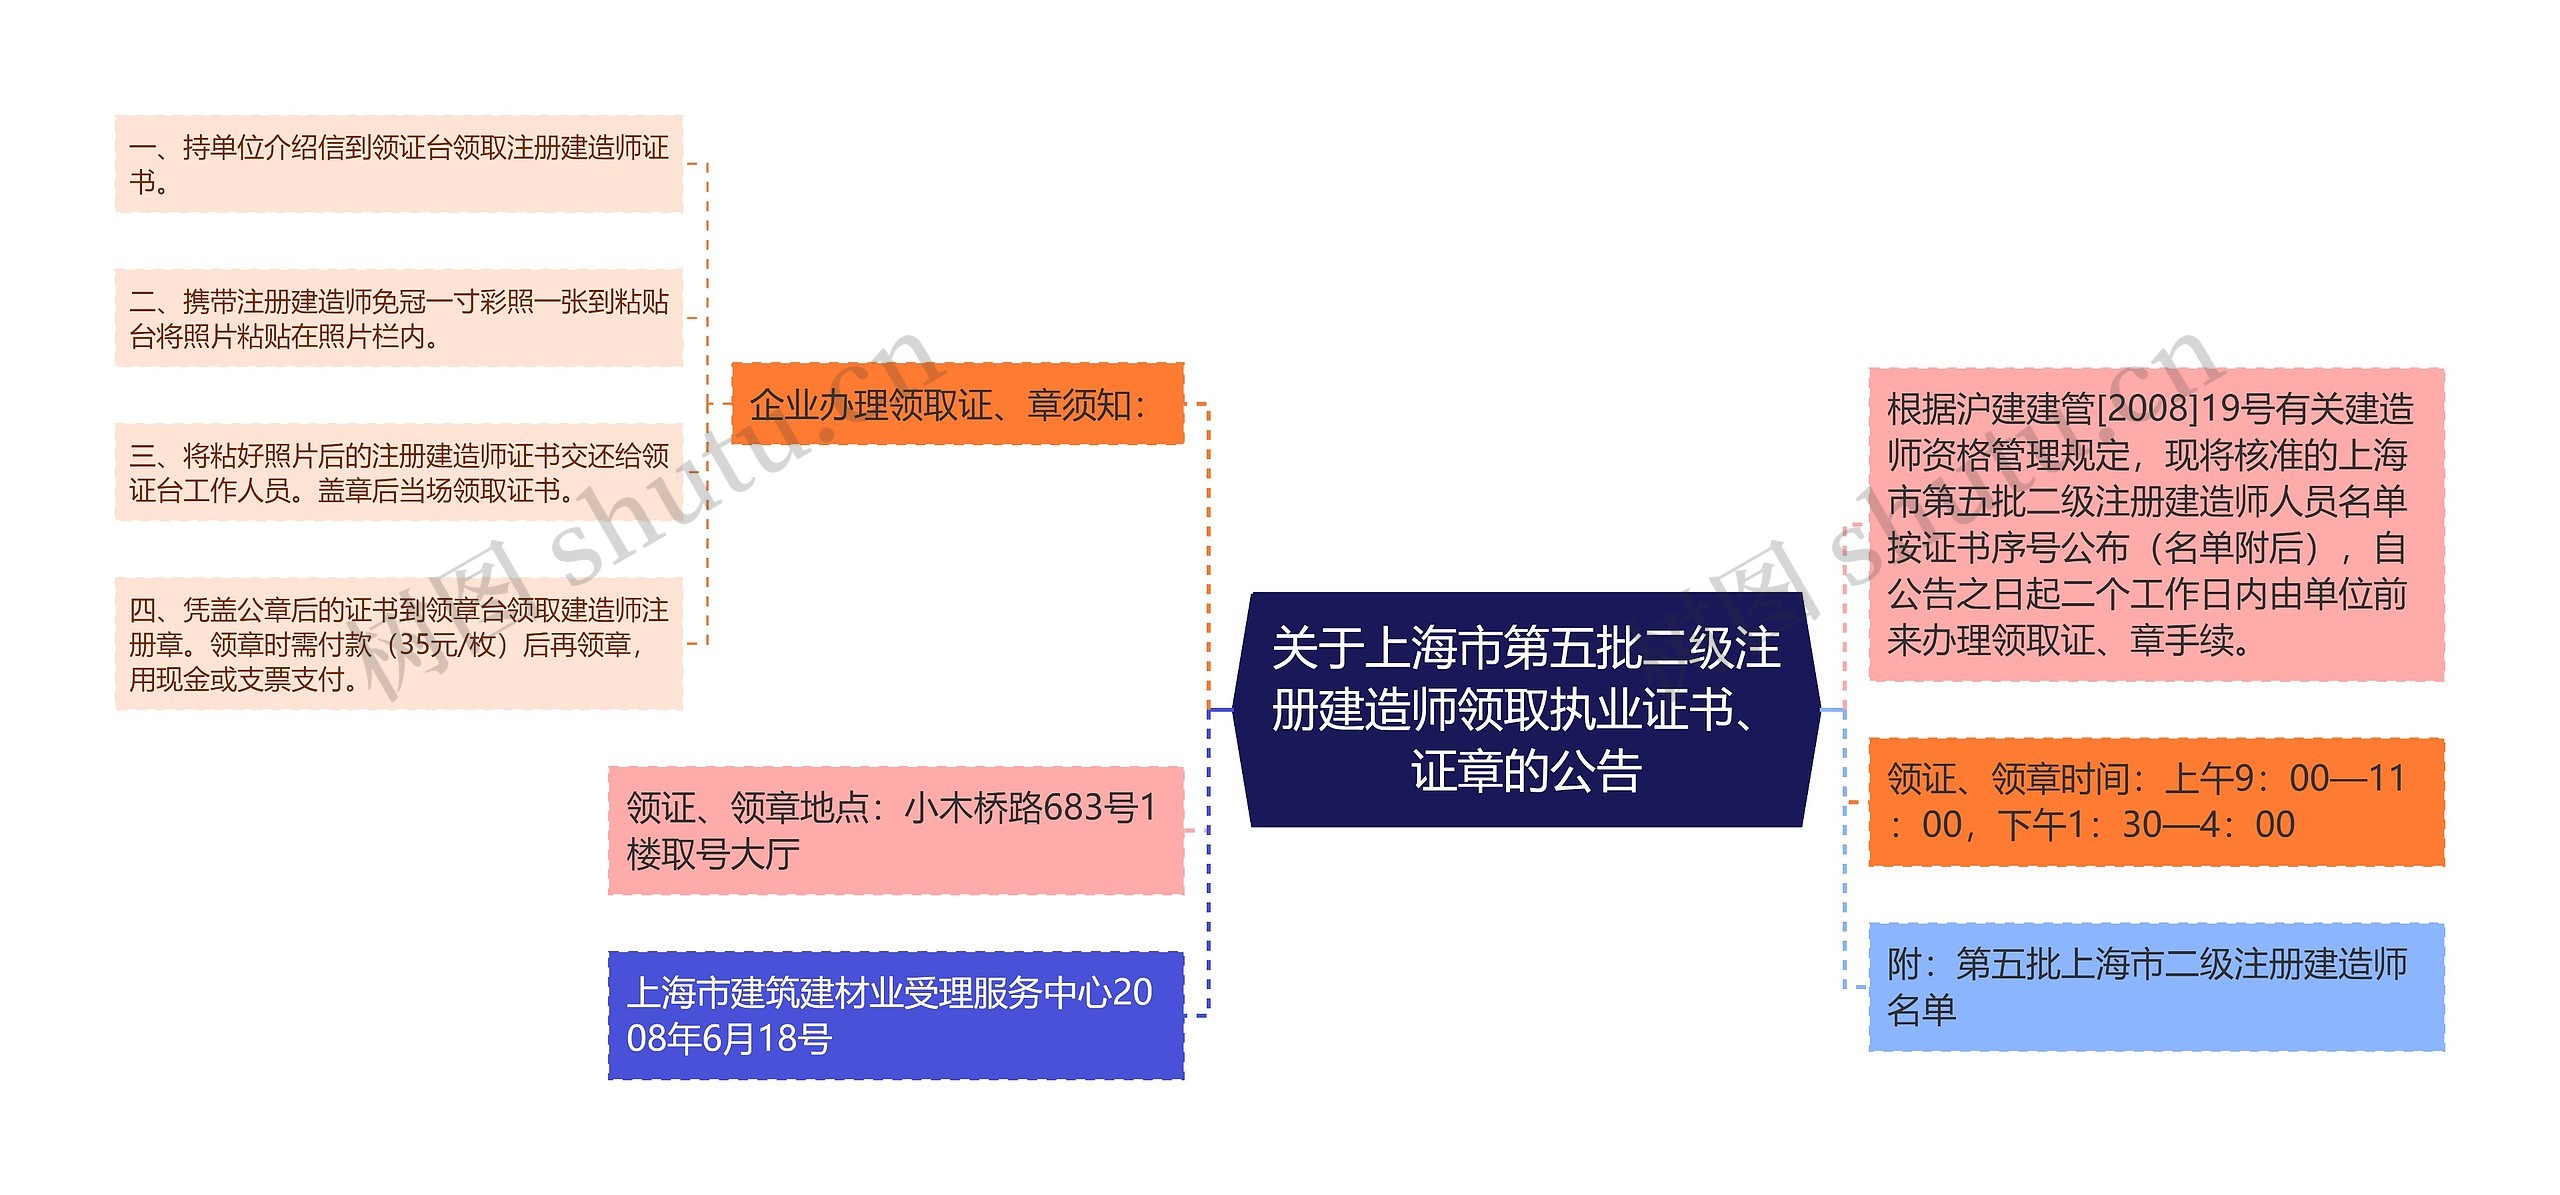 关于上海市第五批二级注册建造师领取执业证书、证章的公告